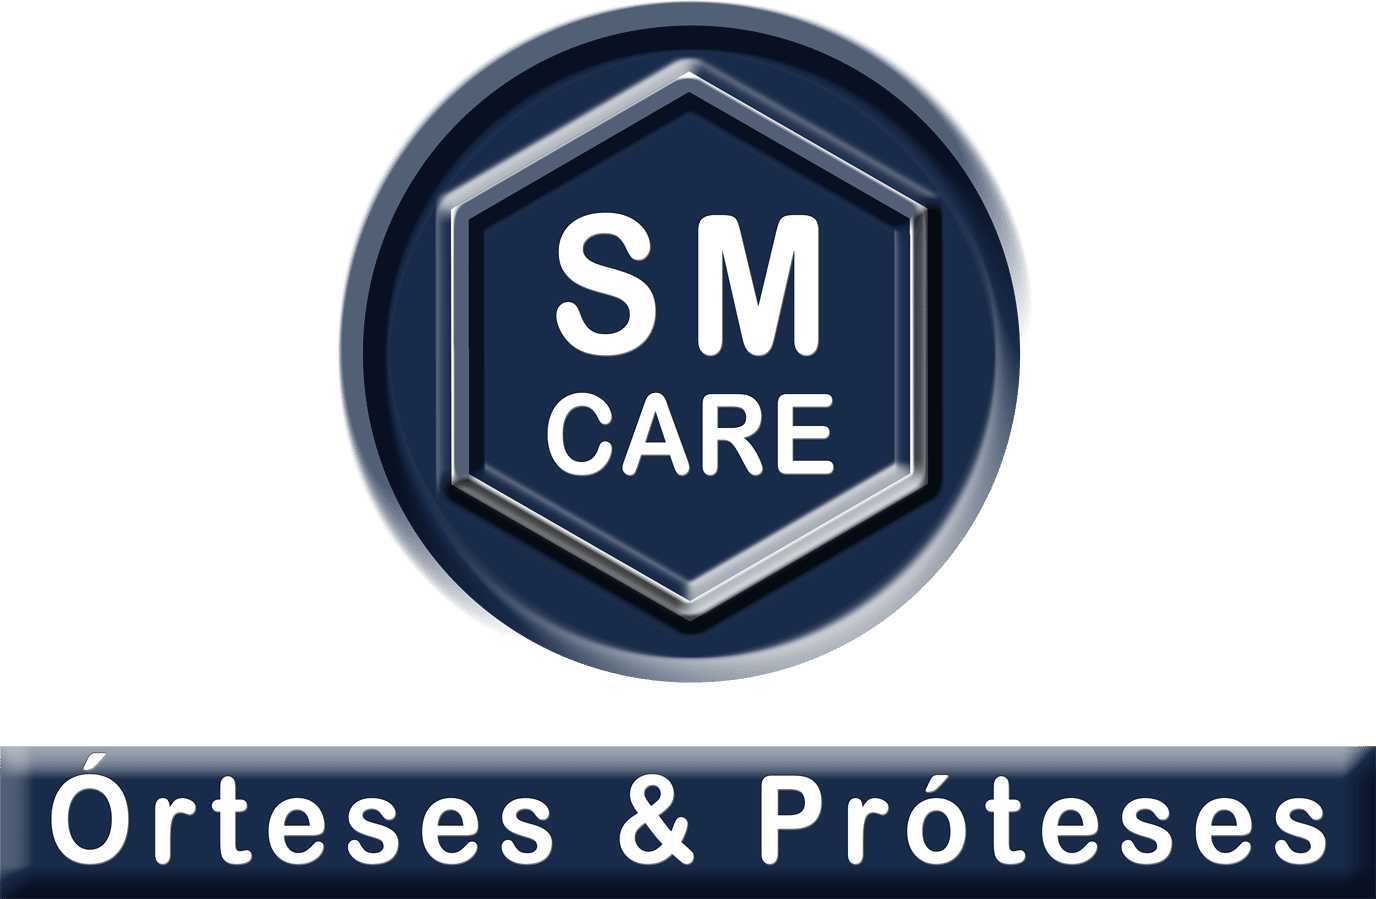 SM Care